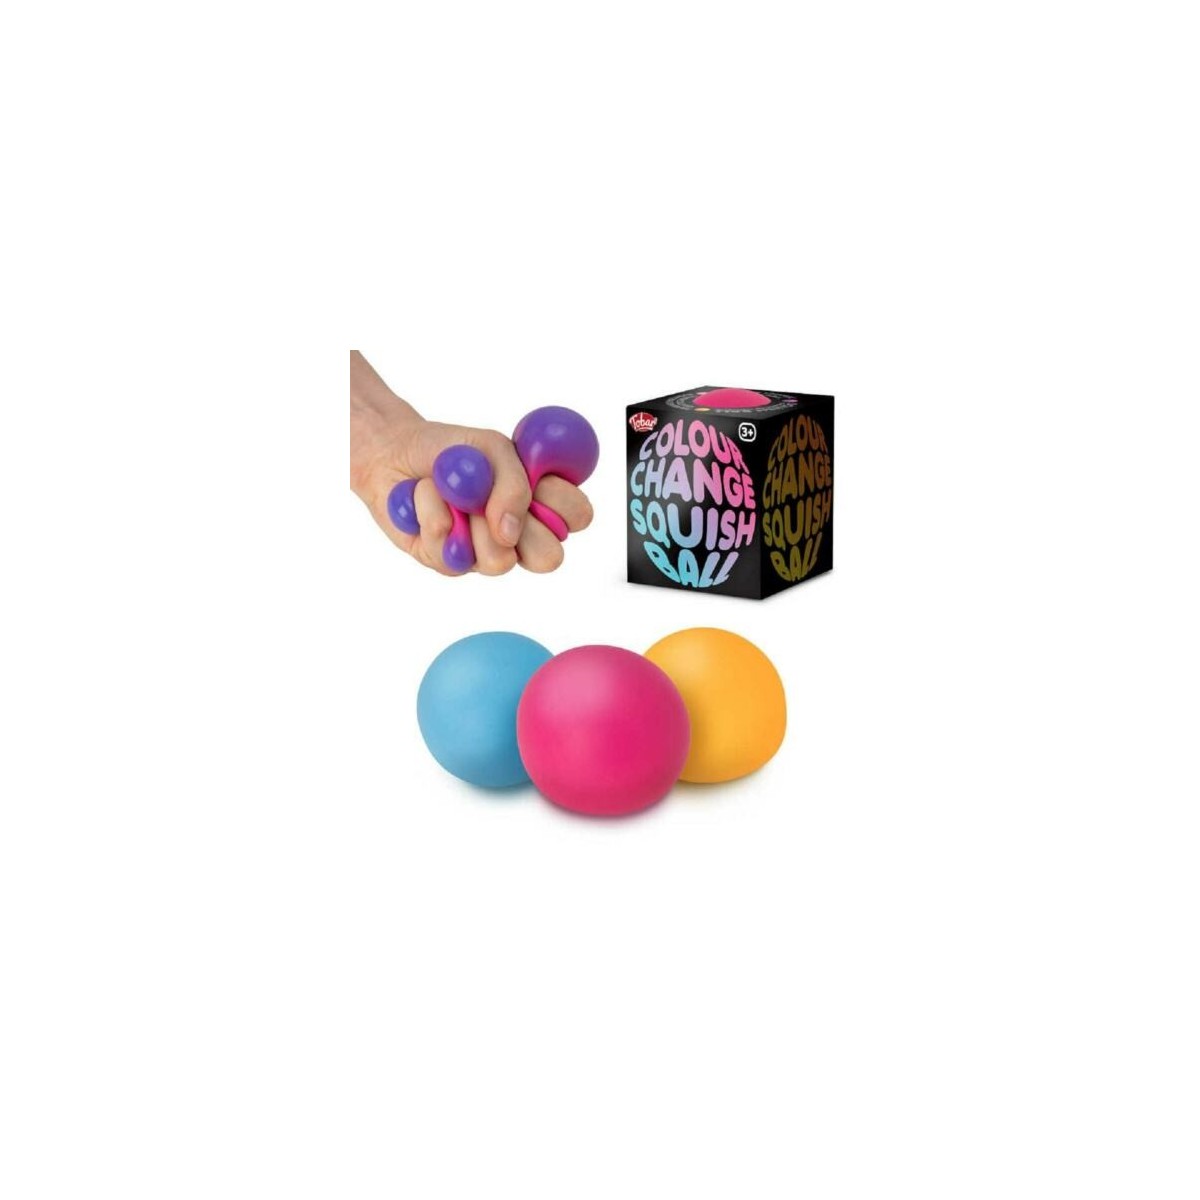 Squish Ball couleur changeante  TOBAR